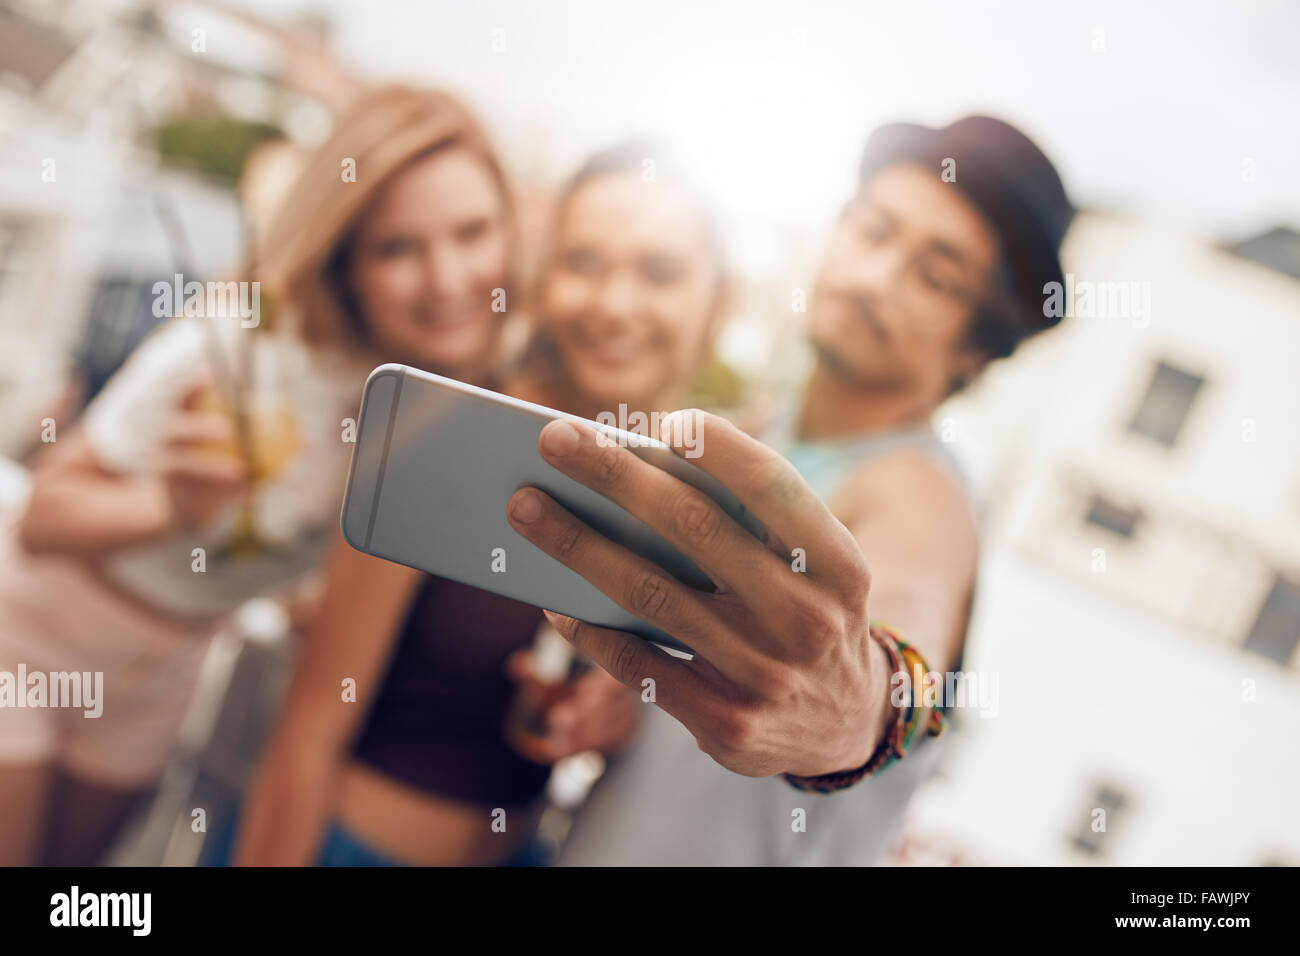 Junge Freunde in einer Partei unter Selbstbildnis mit ihrem Smartphone. Handy in die Hand des Menschen im Mittelpunkt. Stockfoto